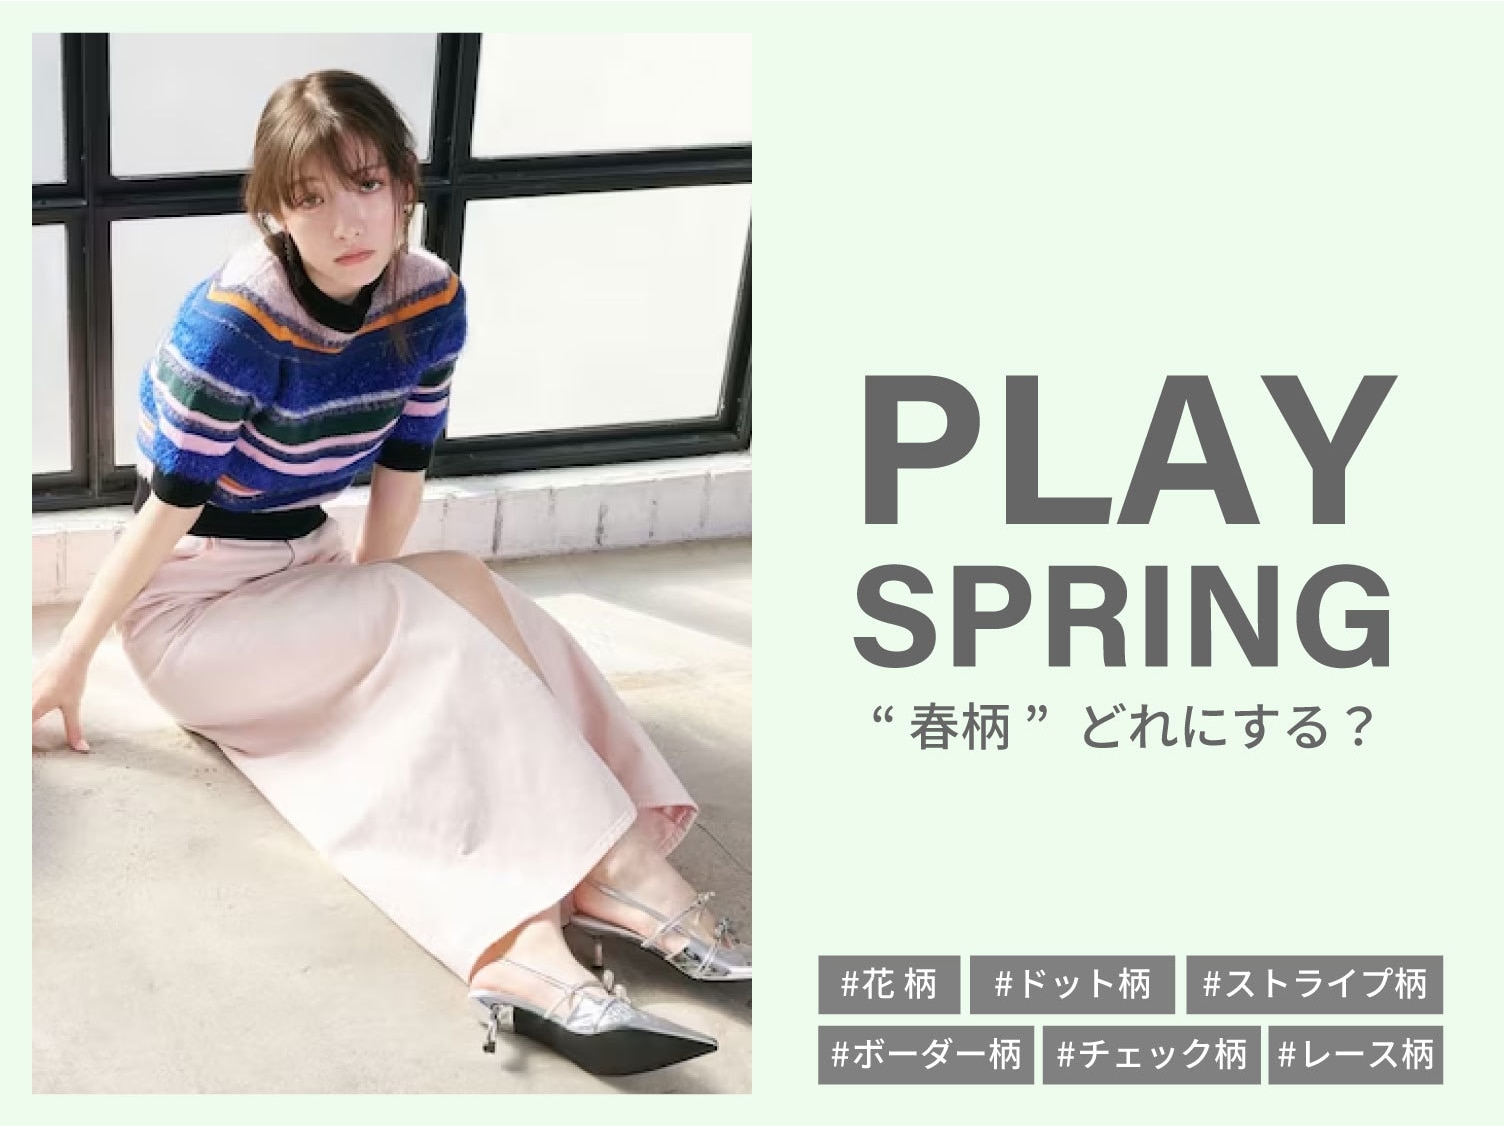 「PLAY SPRING」”春柄”どれにする？